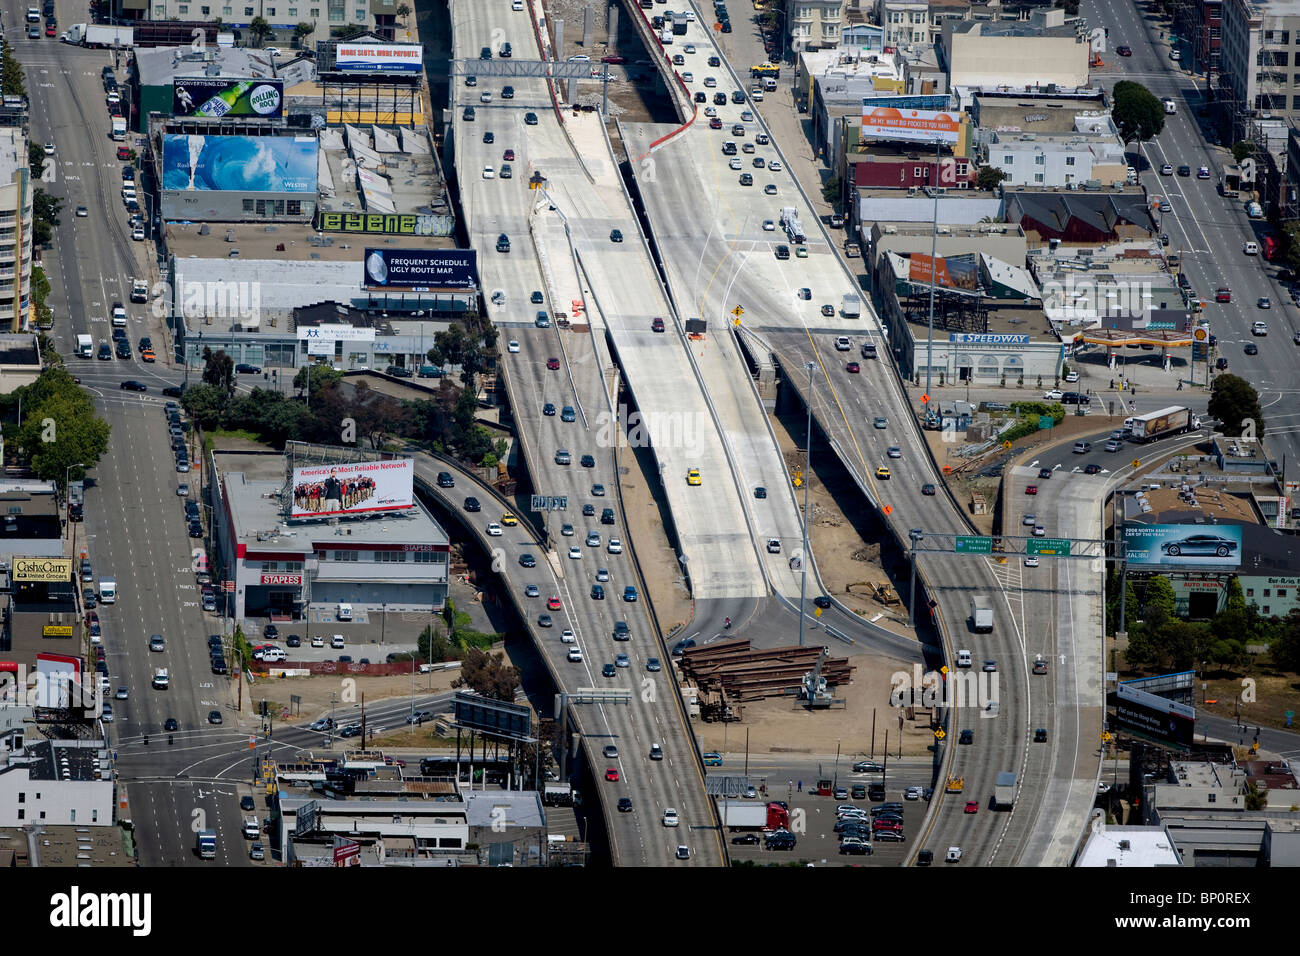 Vista aérea de 10 carteleras numerosos signos adicionales de la interestatal 80 en la rampa de salida lateral de San Francisco Bay Bridge Foto de stock